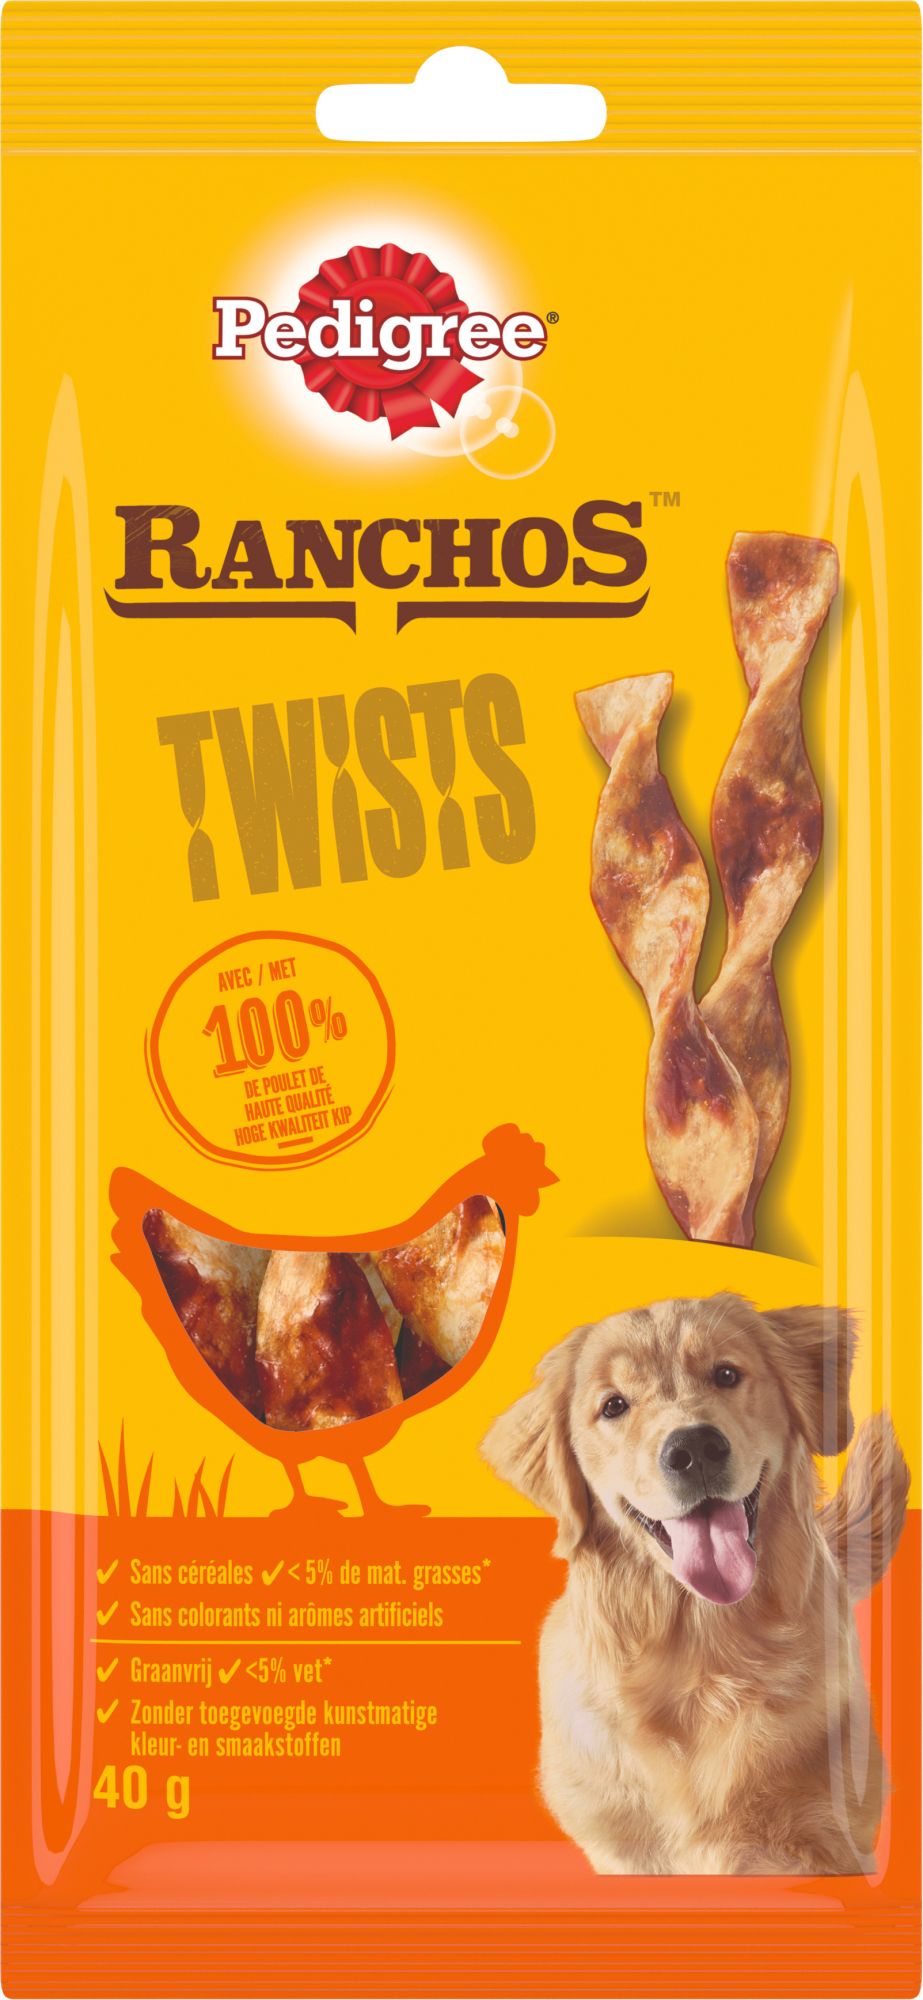 Pedigree Ranchos, twist di pollo per cani